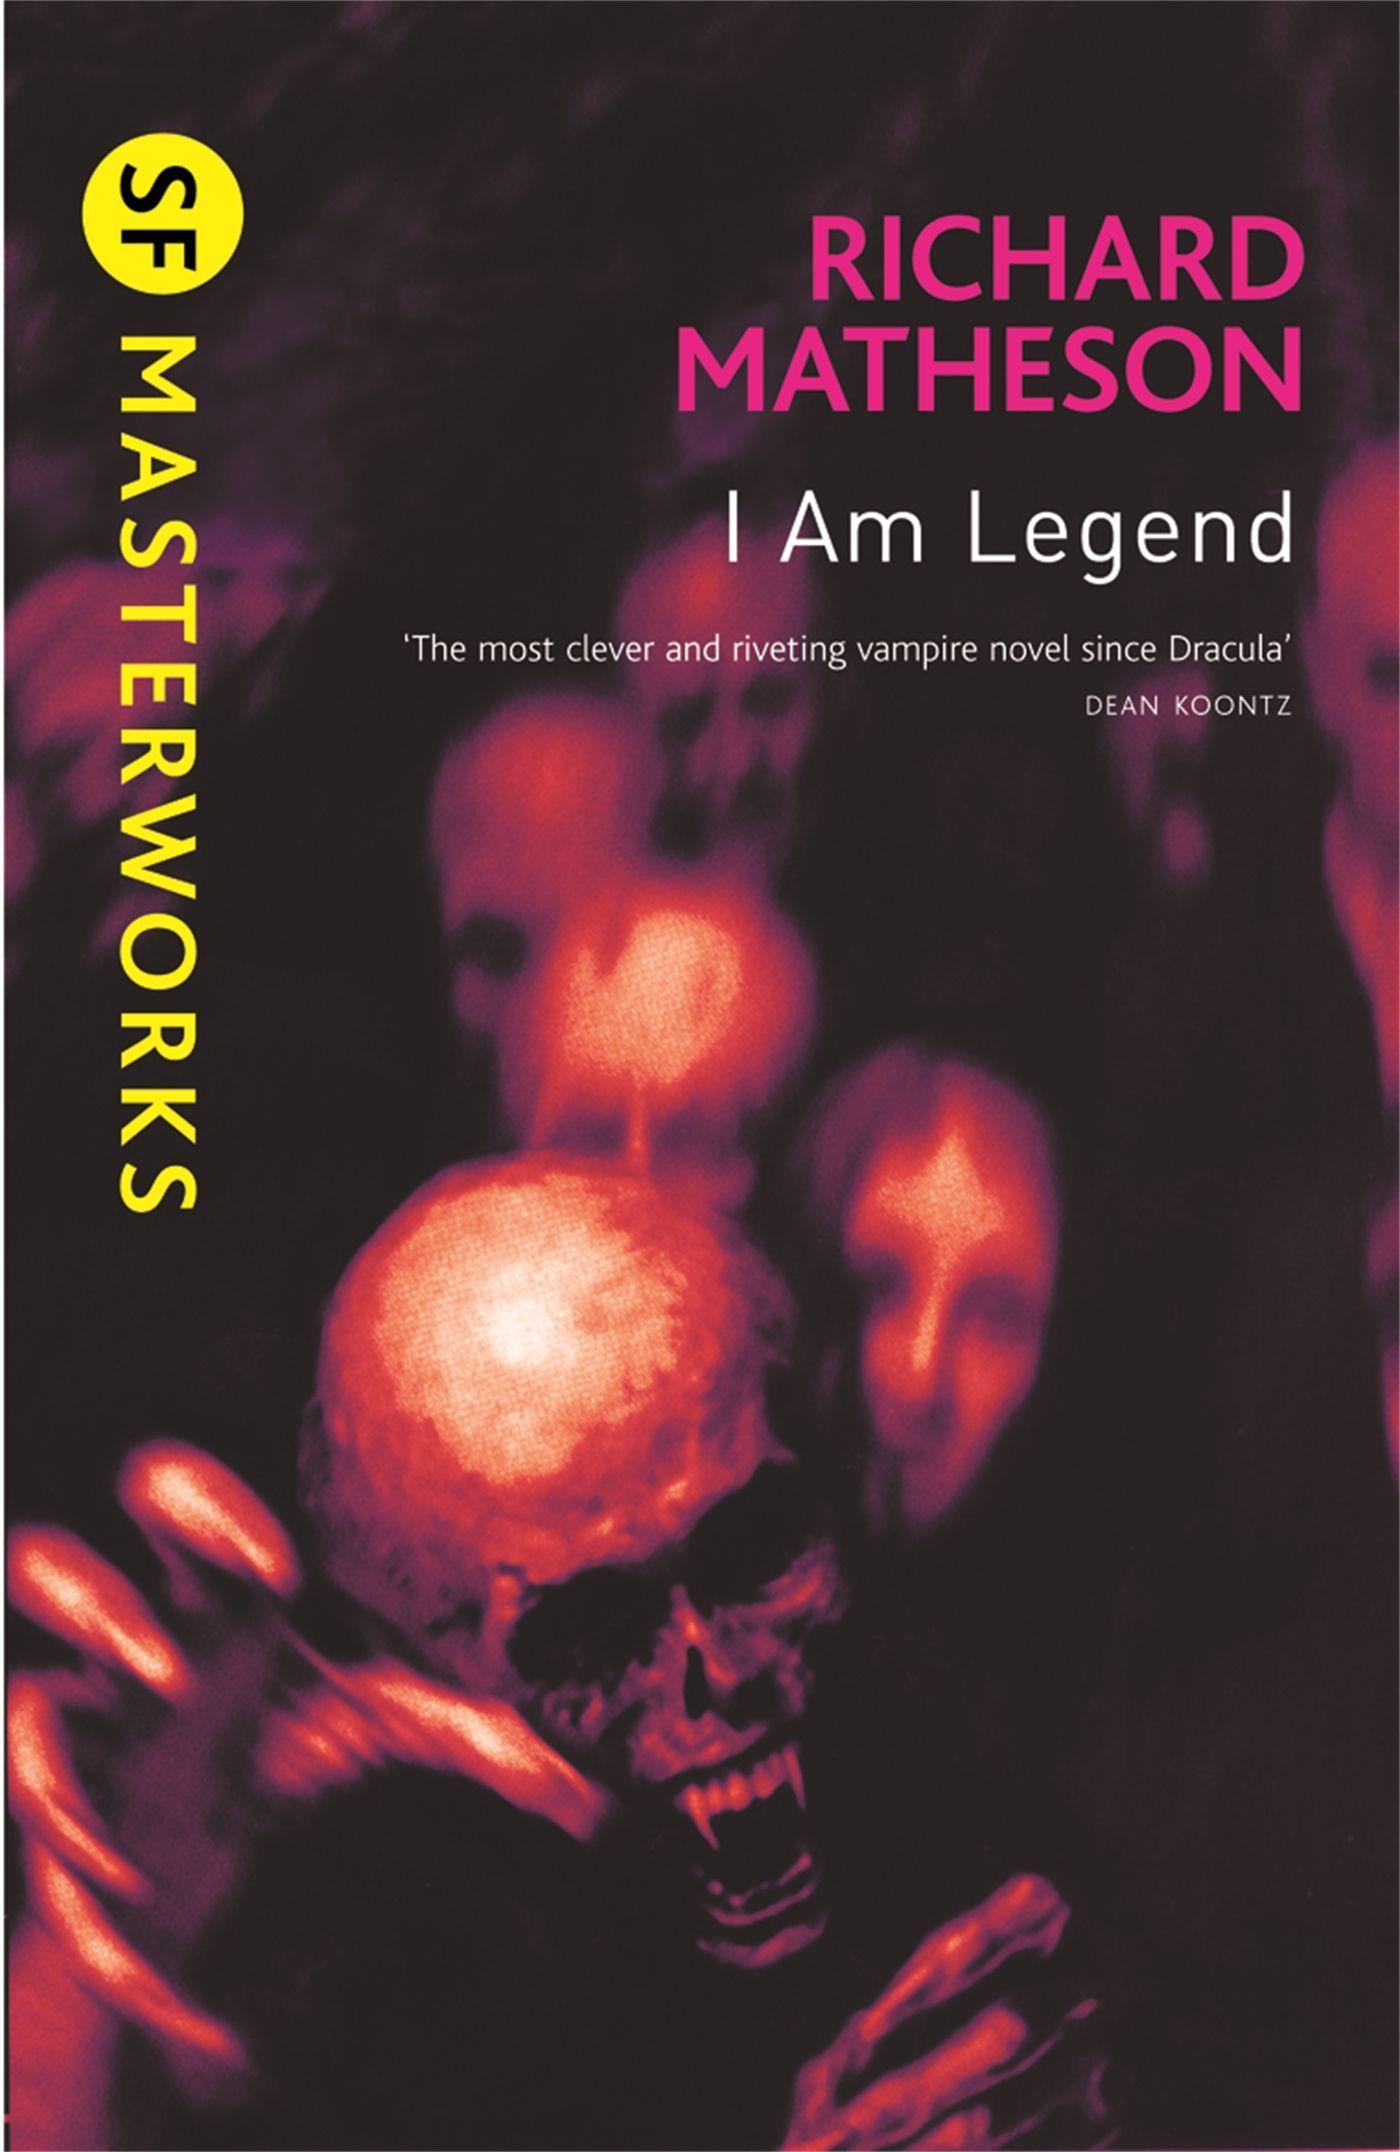 I am Legend / Richard Matheson / Taschenbuch / S. F. Masterworks / 176 S. / Englisch / 2010 / Orion Publishing Group / EAN 9780575094161 - Matheson, Richard